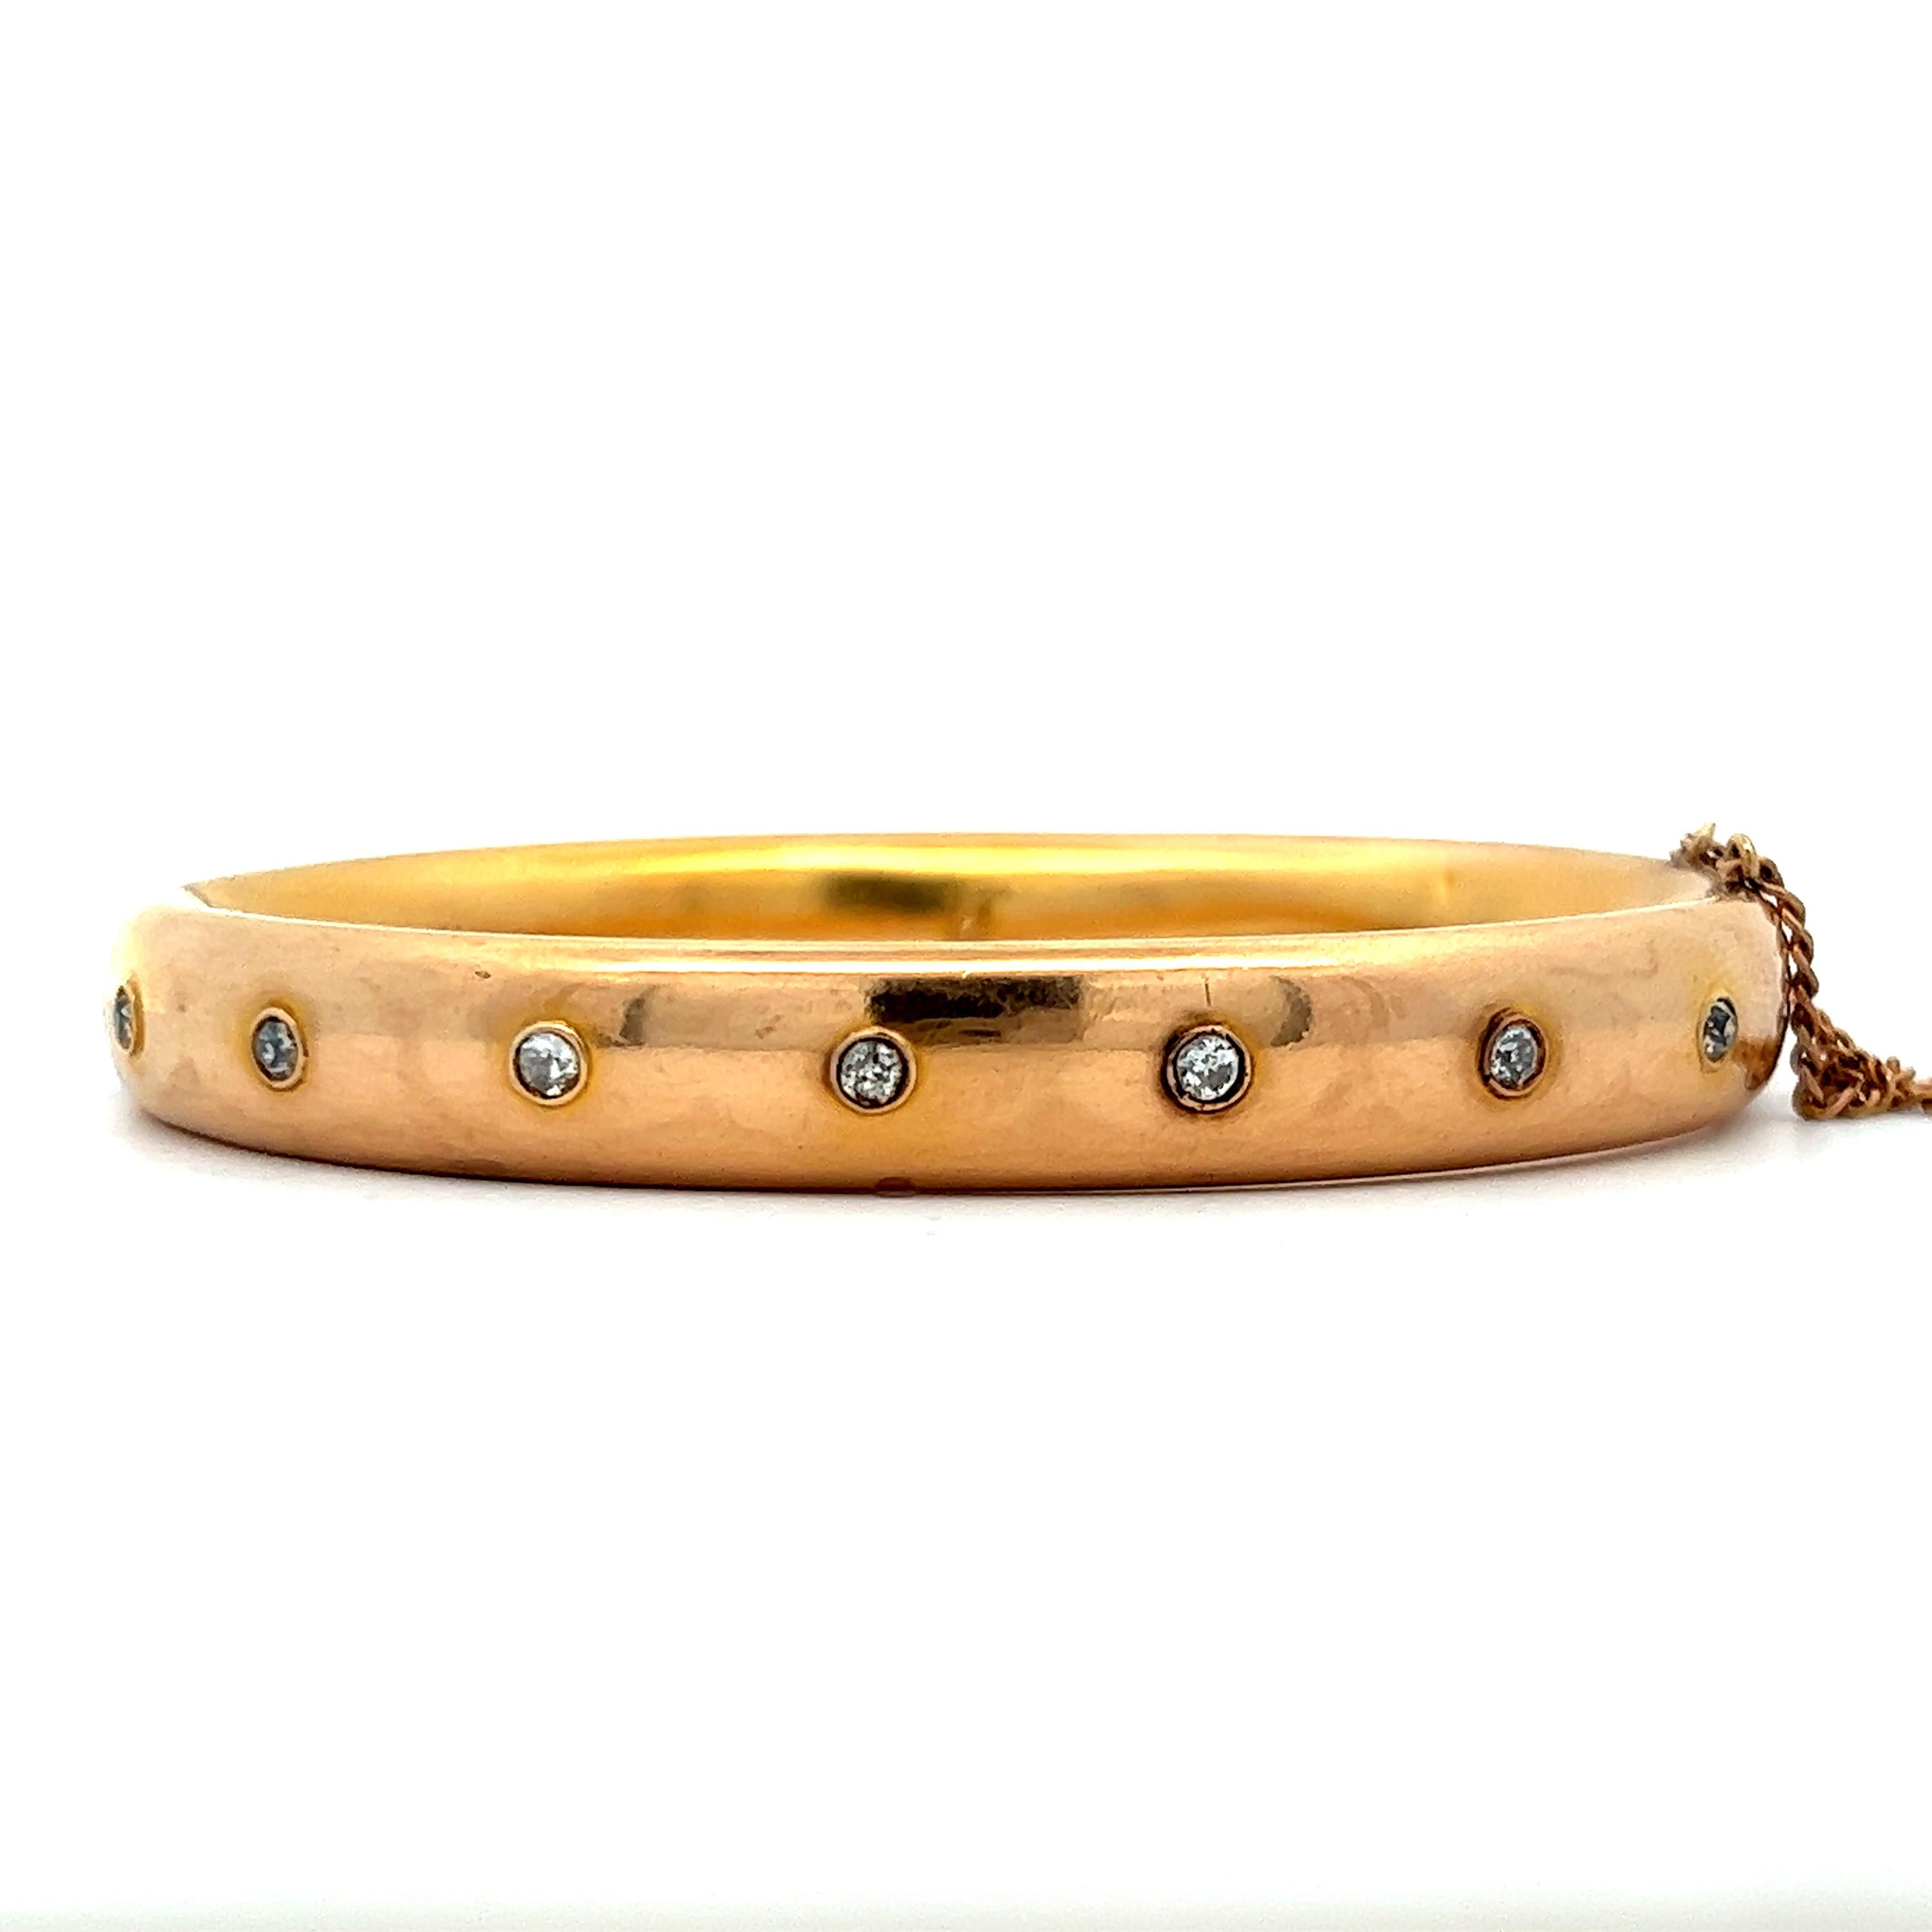 Dieses atemberaubende viktorianische Armband ist aus 14k Gelbgold mit Diamanten gefertigt. Das Armband hat ein Scharnier mit Verschluss und Kette, um einen sicheren und bequemen Sitz zu gewährleisten. Die Armspange ist in der Mitte mit Diamanten von